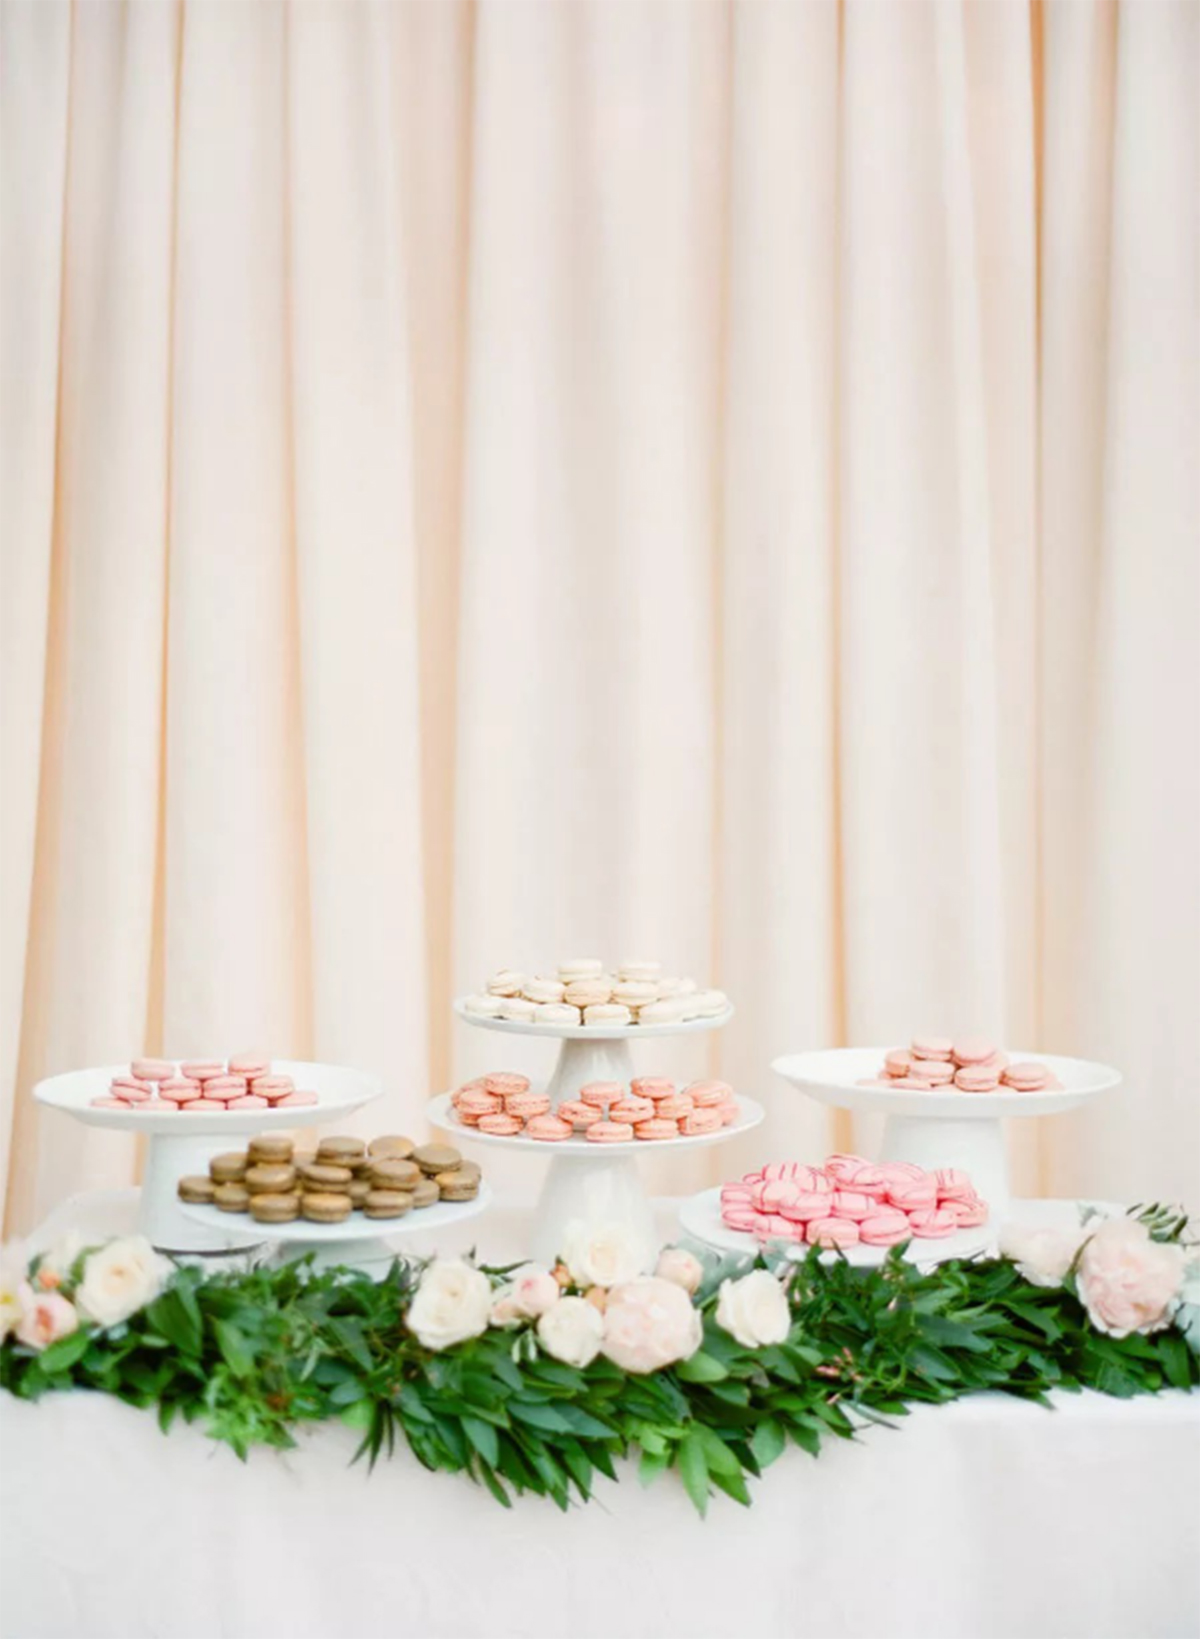 那些让人印象深刻的婚礼创意甜品台848.jpg